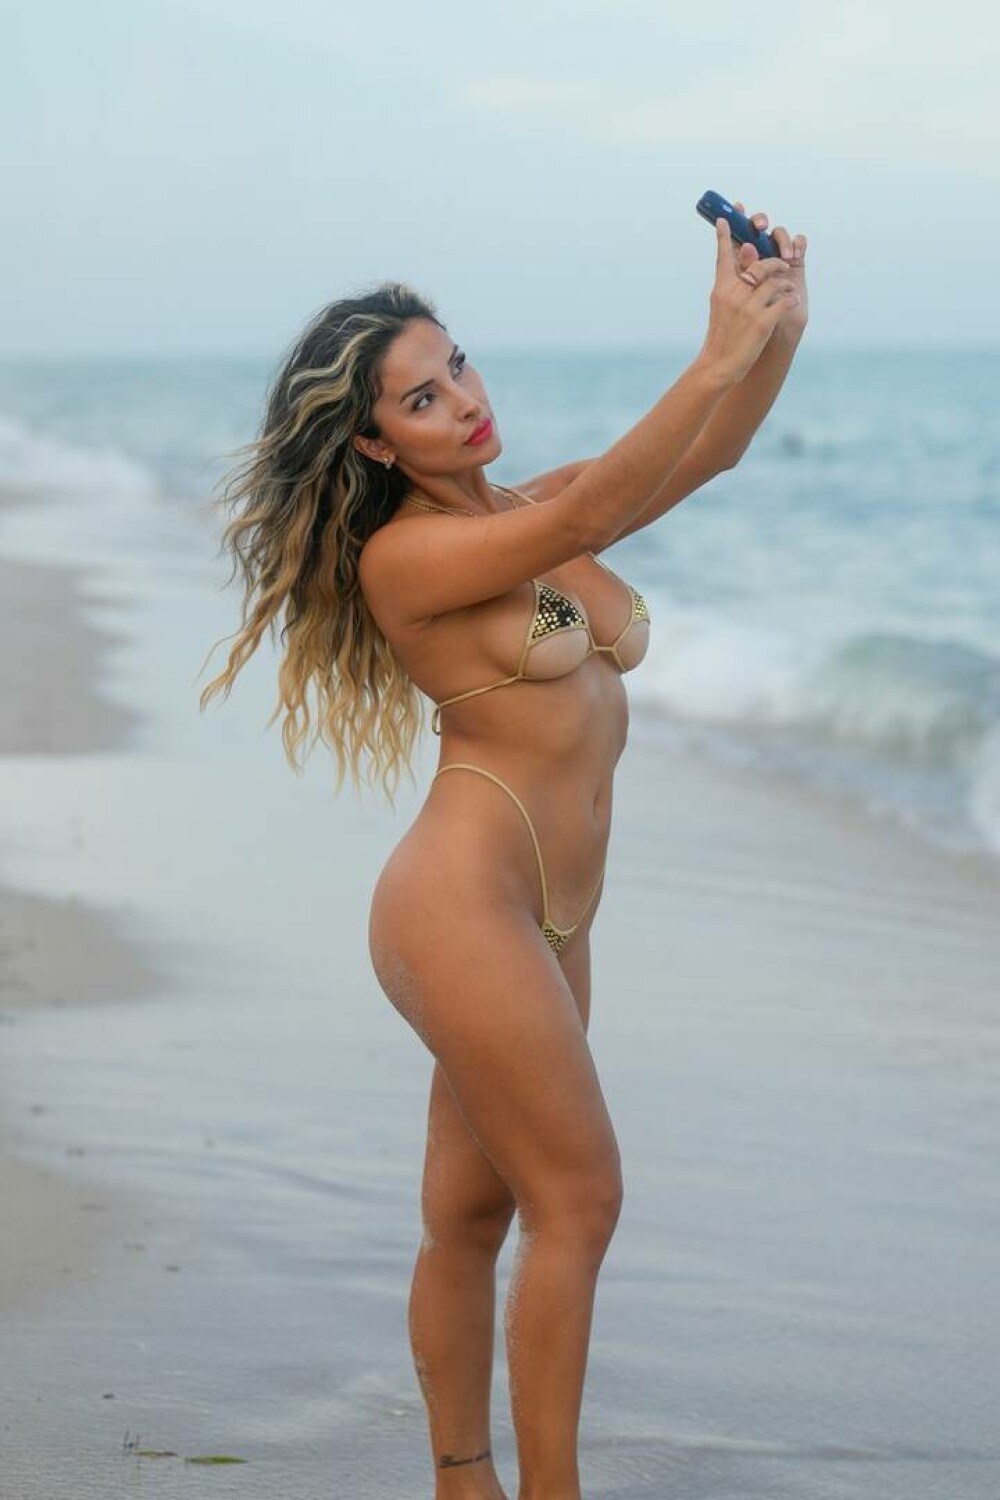 Fotomodelul care a purtat pe plajă un bikini minuscul auriu și a întors toate privirile. Dorina a pozat fără inhibiții | FOTO - Imaginea 6